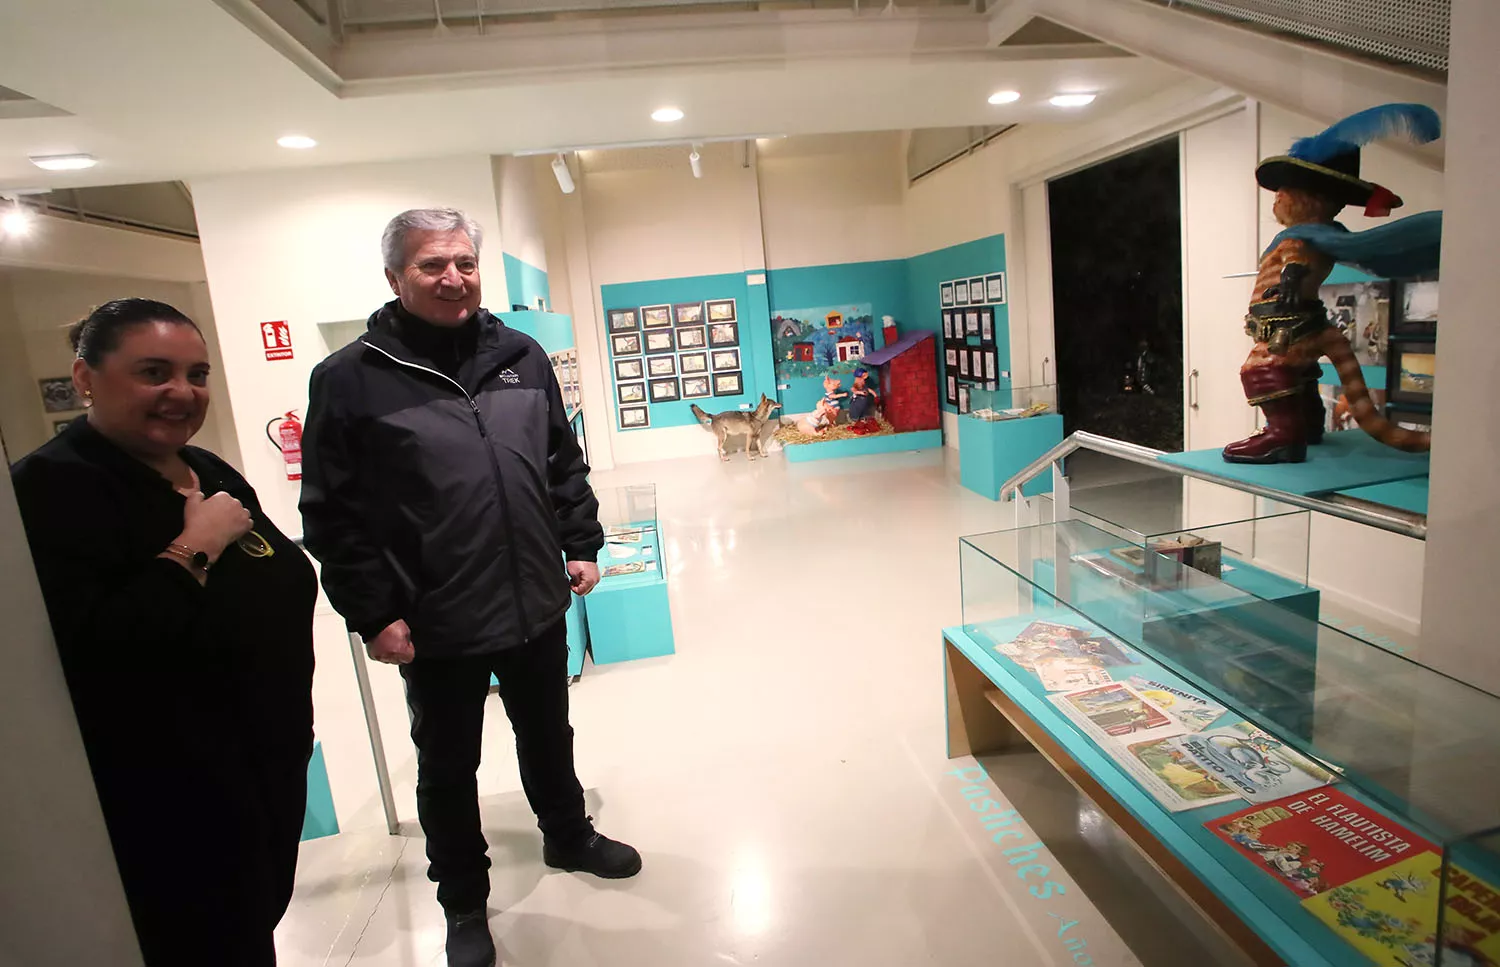 El Museo Munic de Carracedelo amplía su exposición 'Somos cuentos' ante su enorme éxito, con cerca de 8.000 visitas